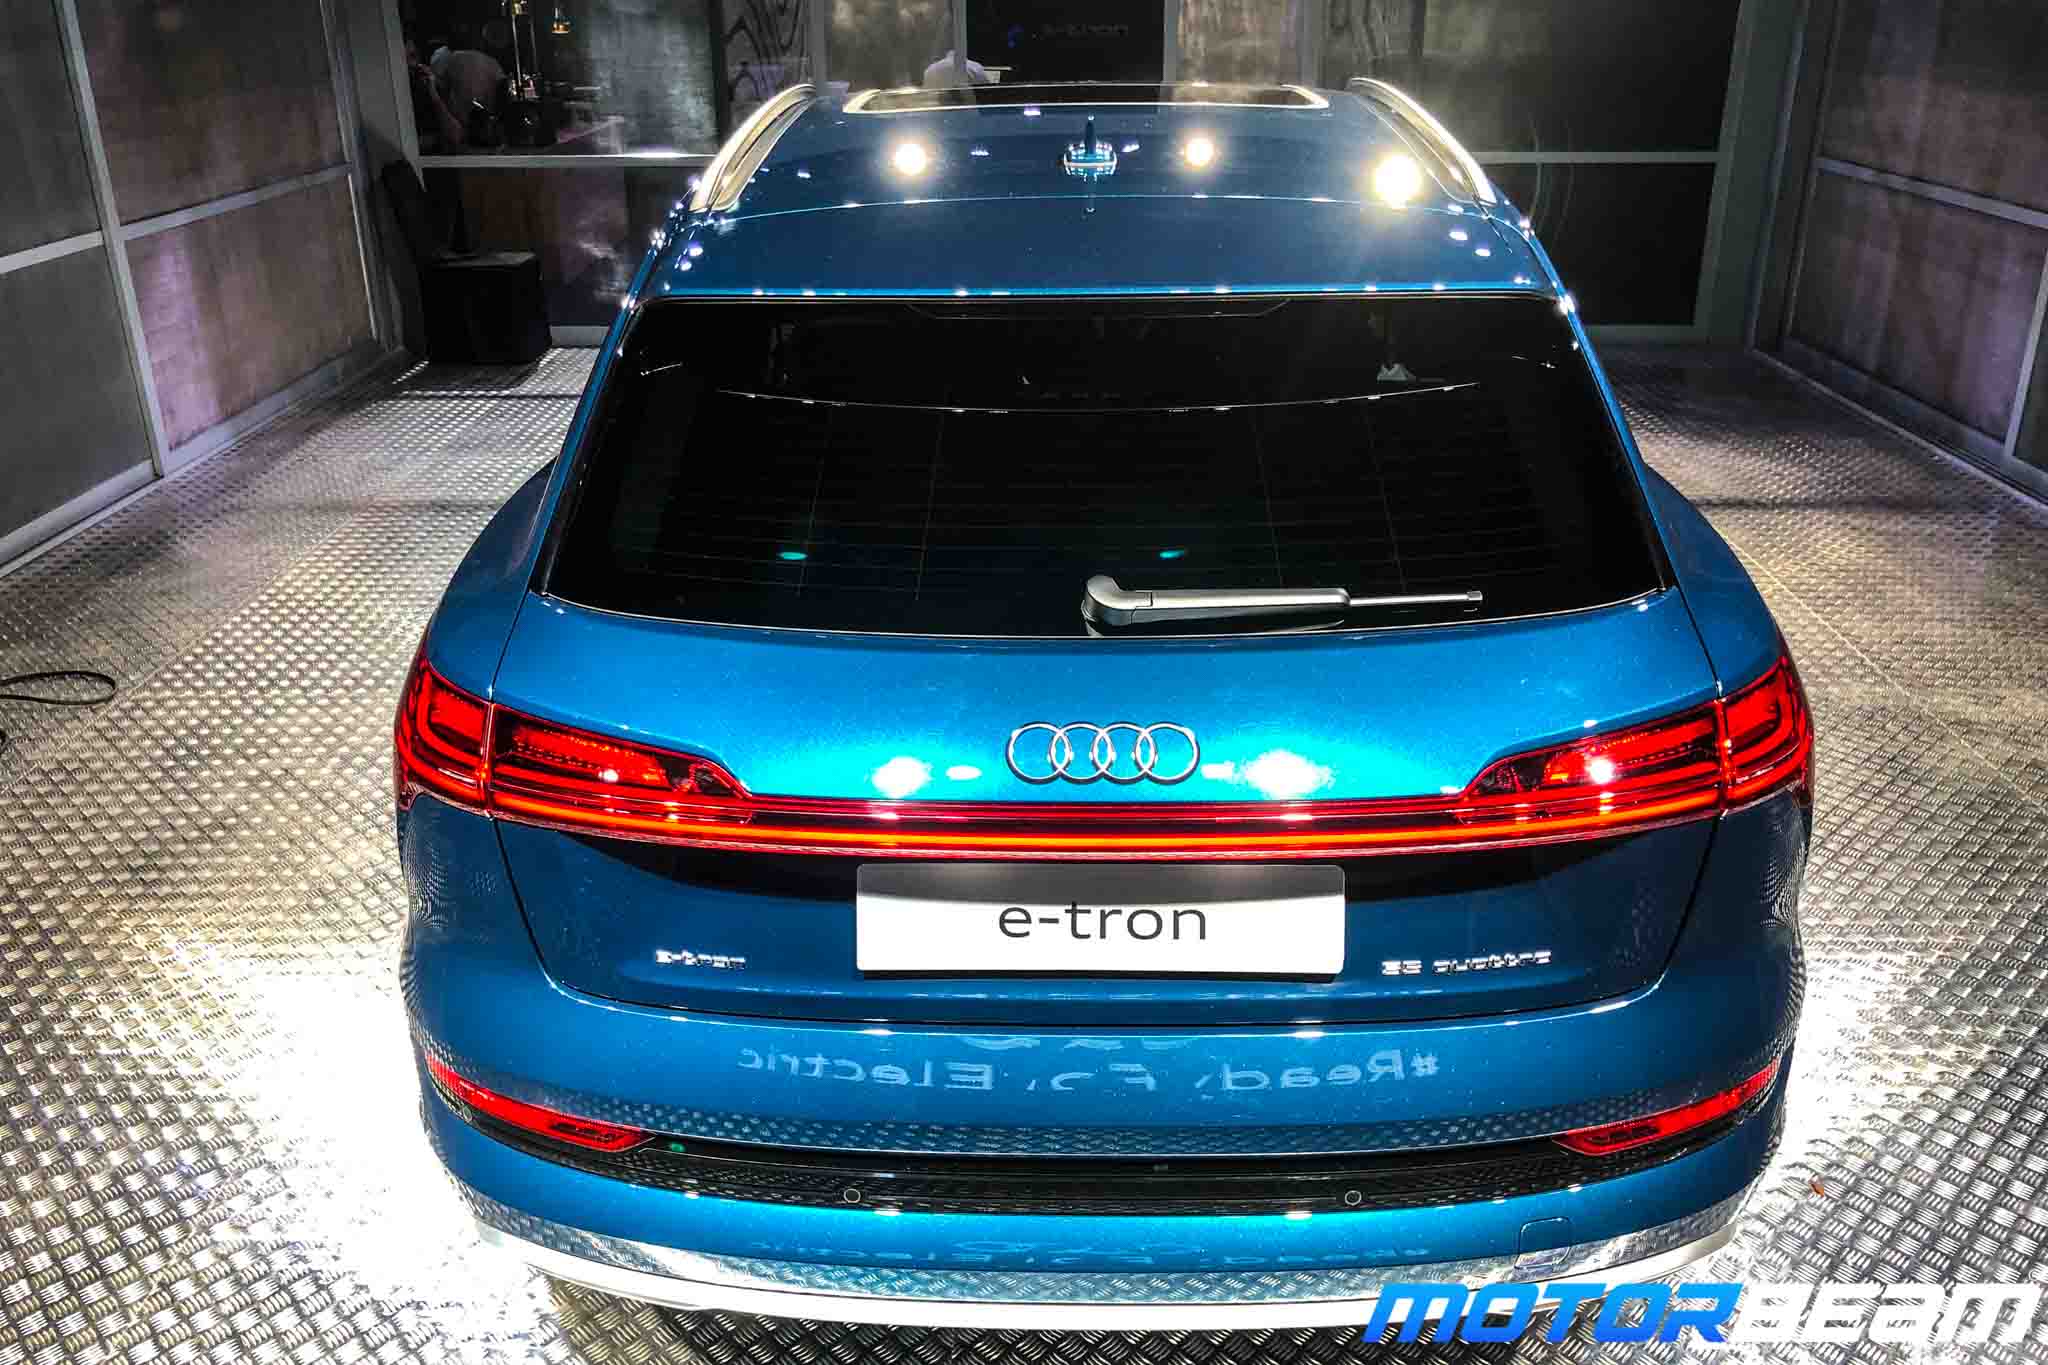 Audi e-tron Design